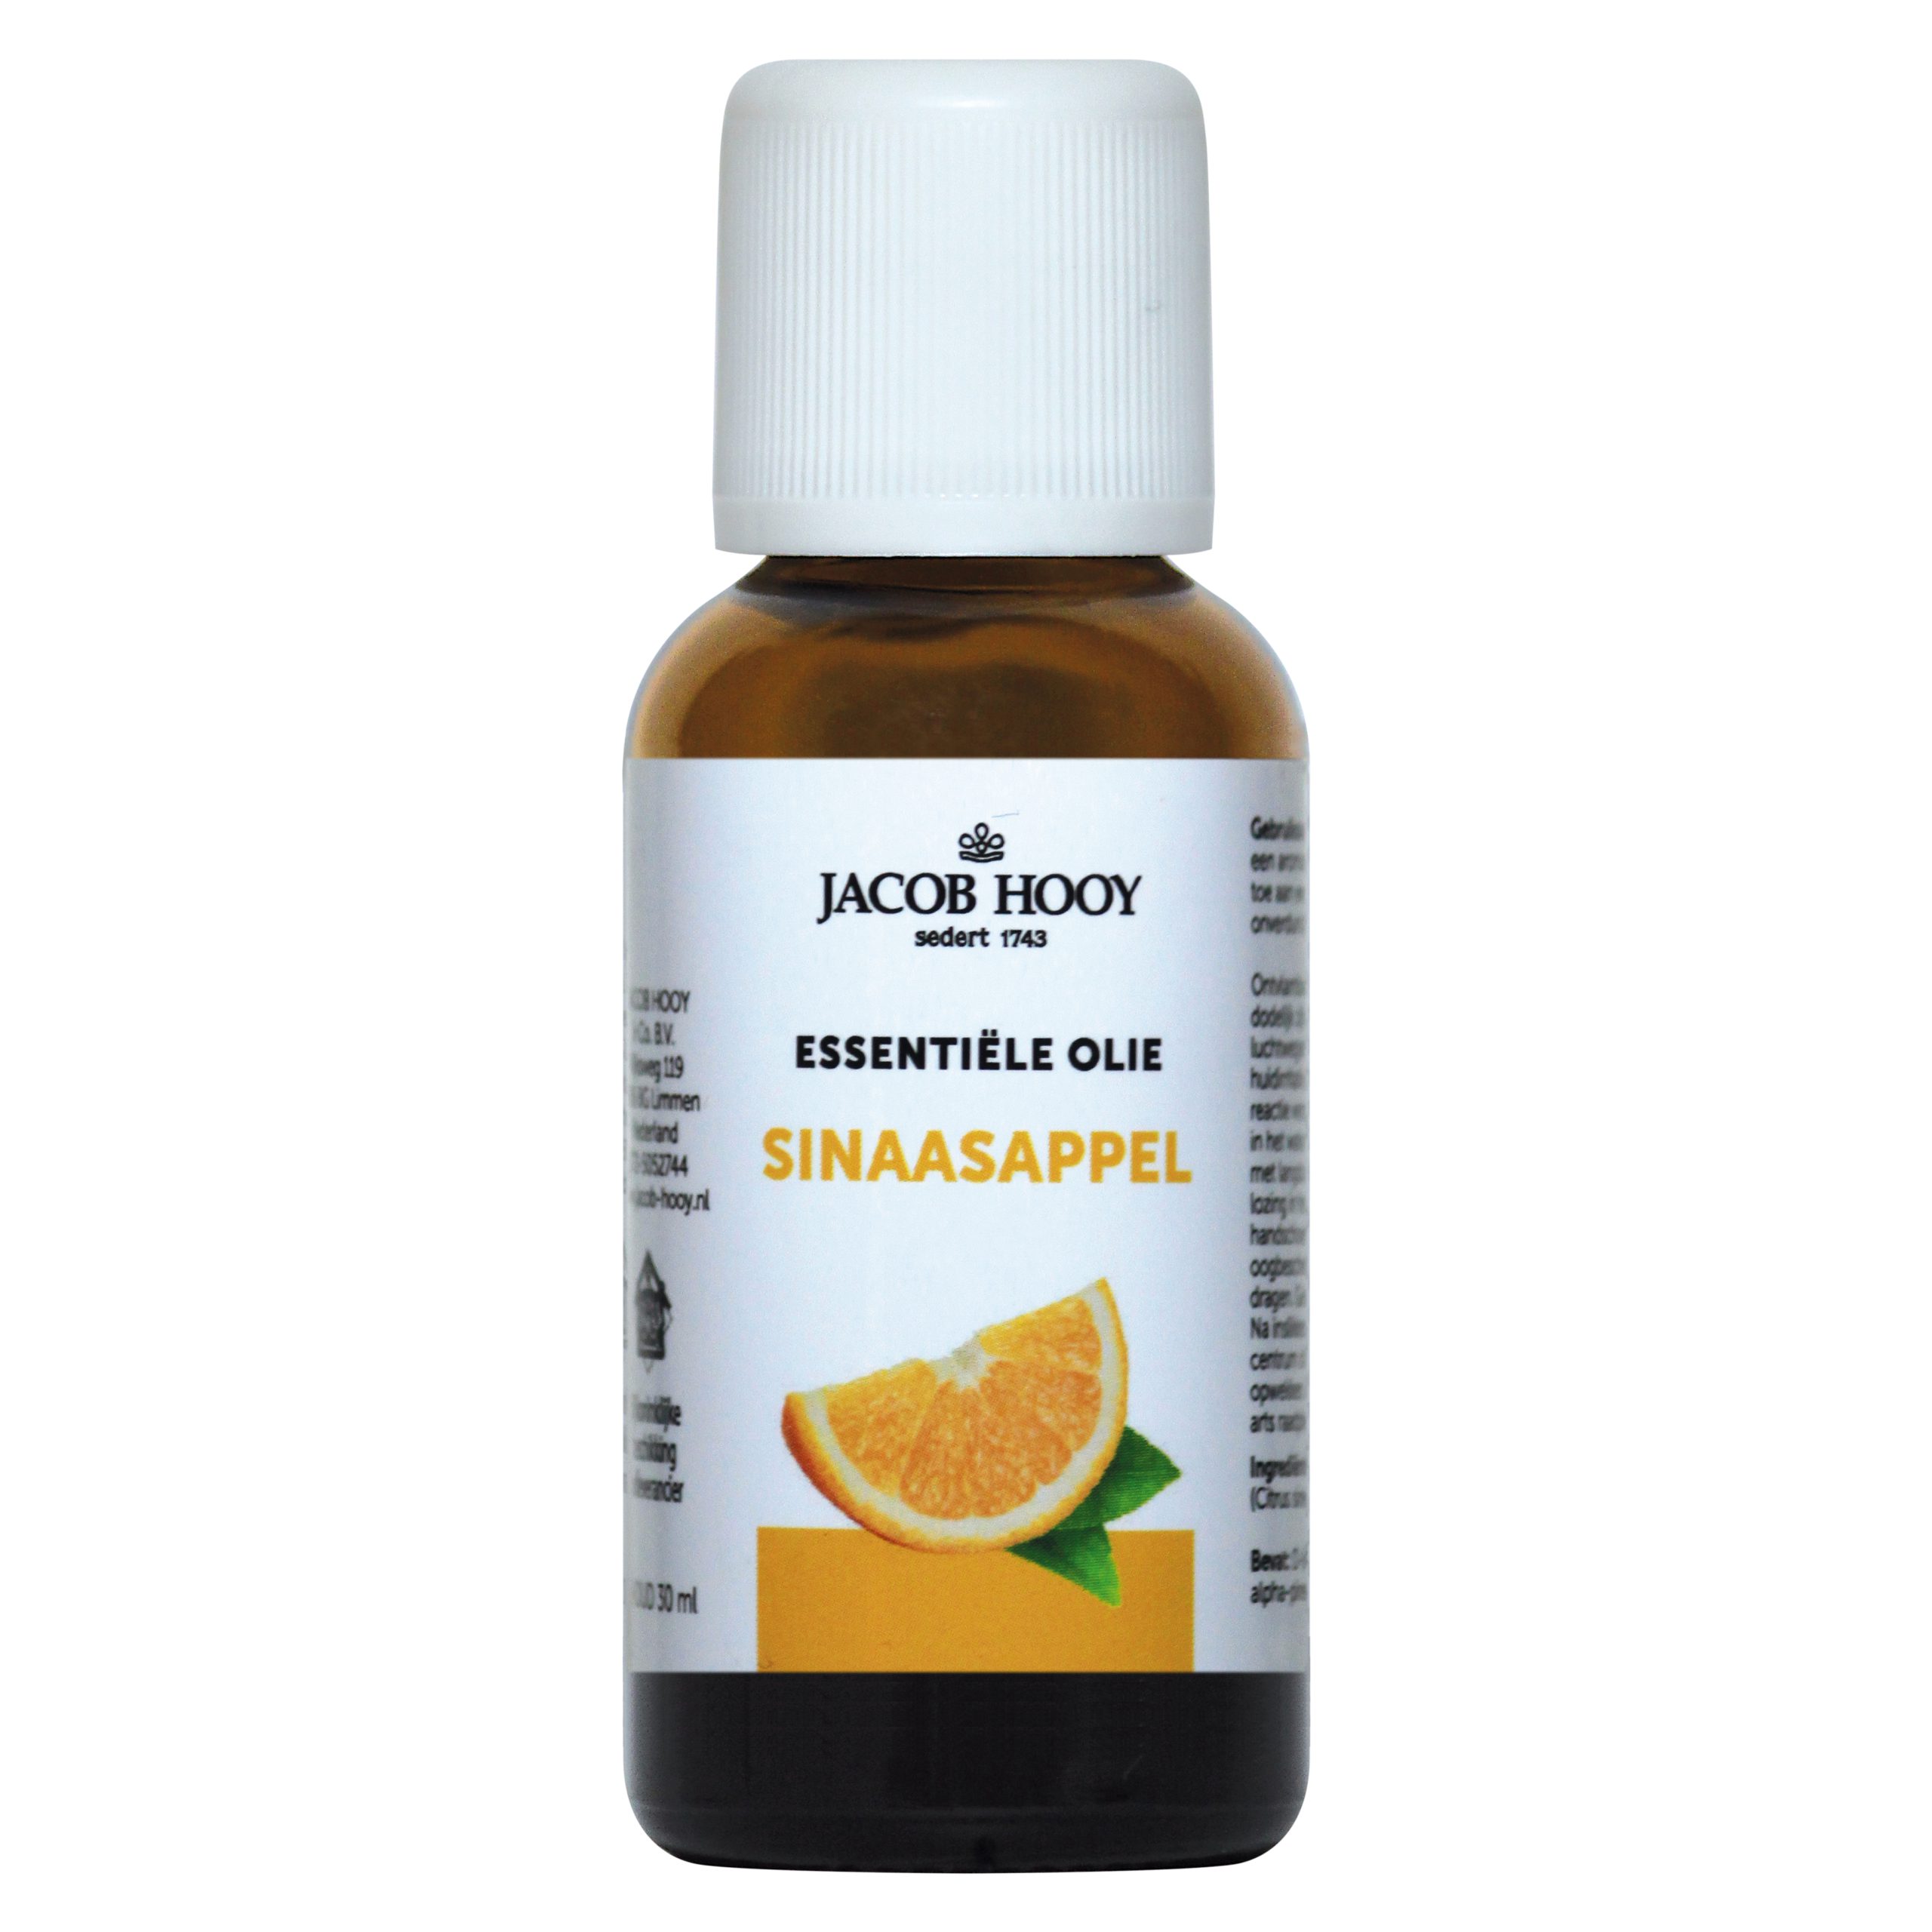 Essentiële olie Sinaasappel 30 ml